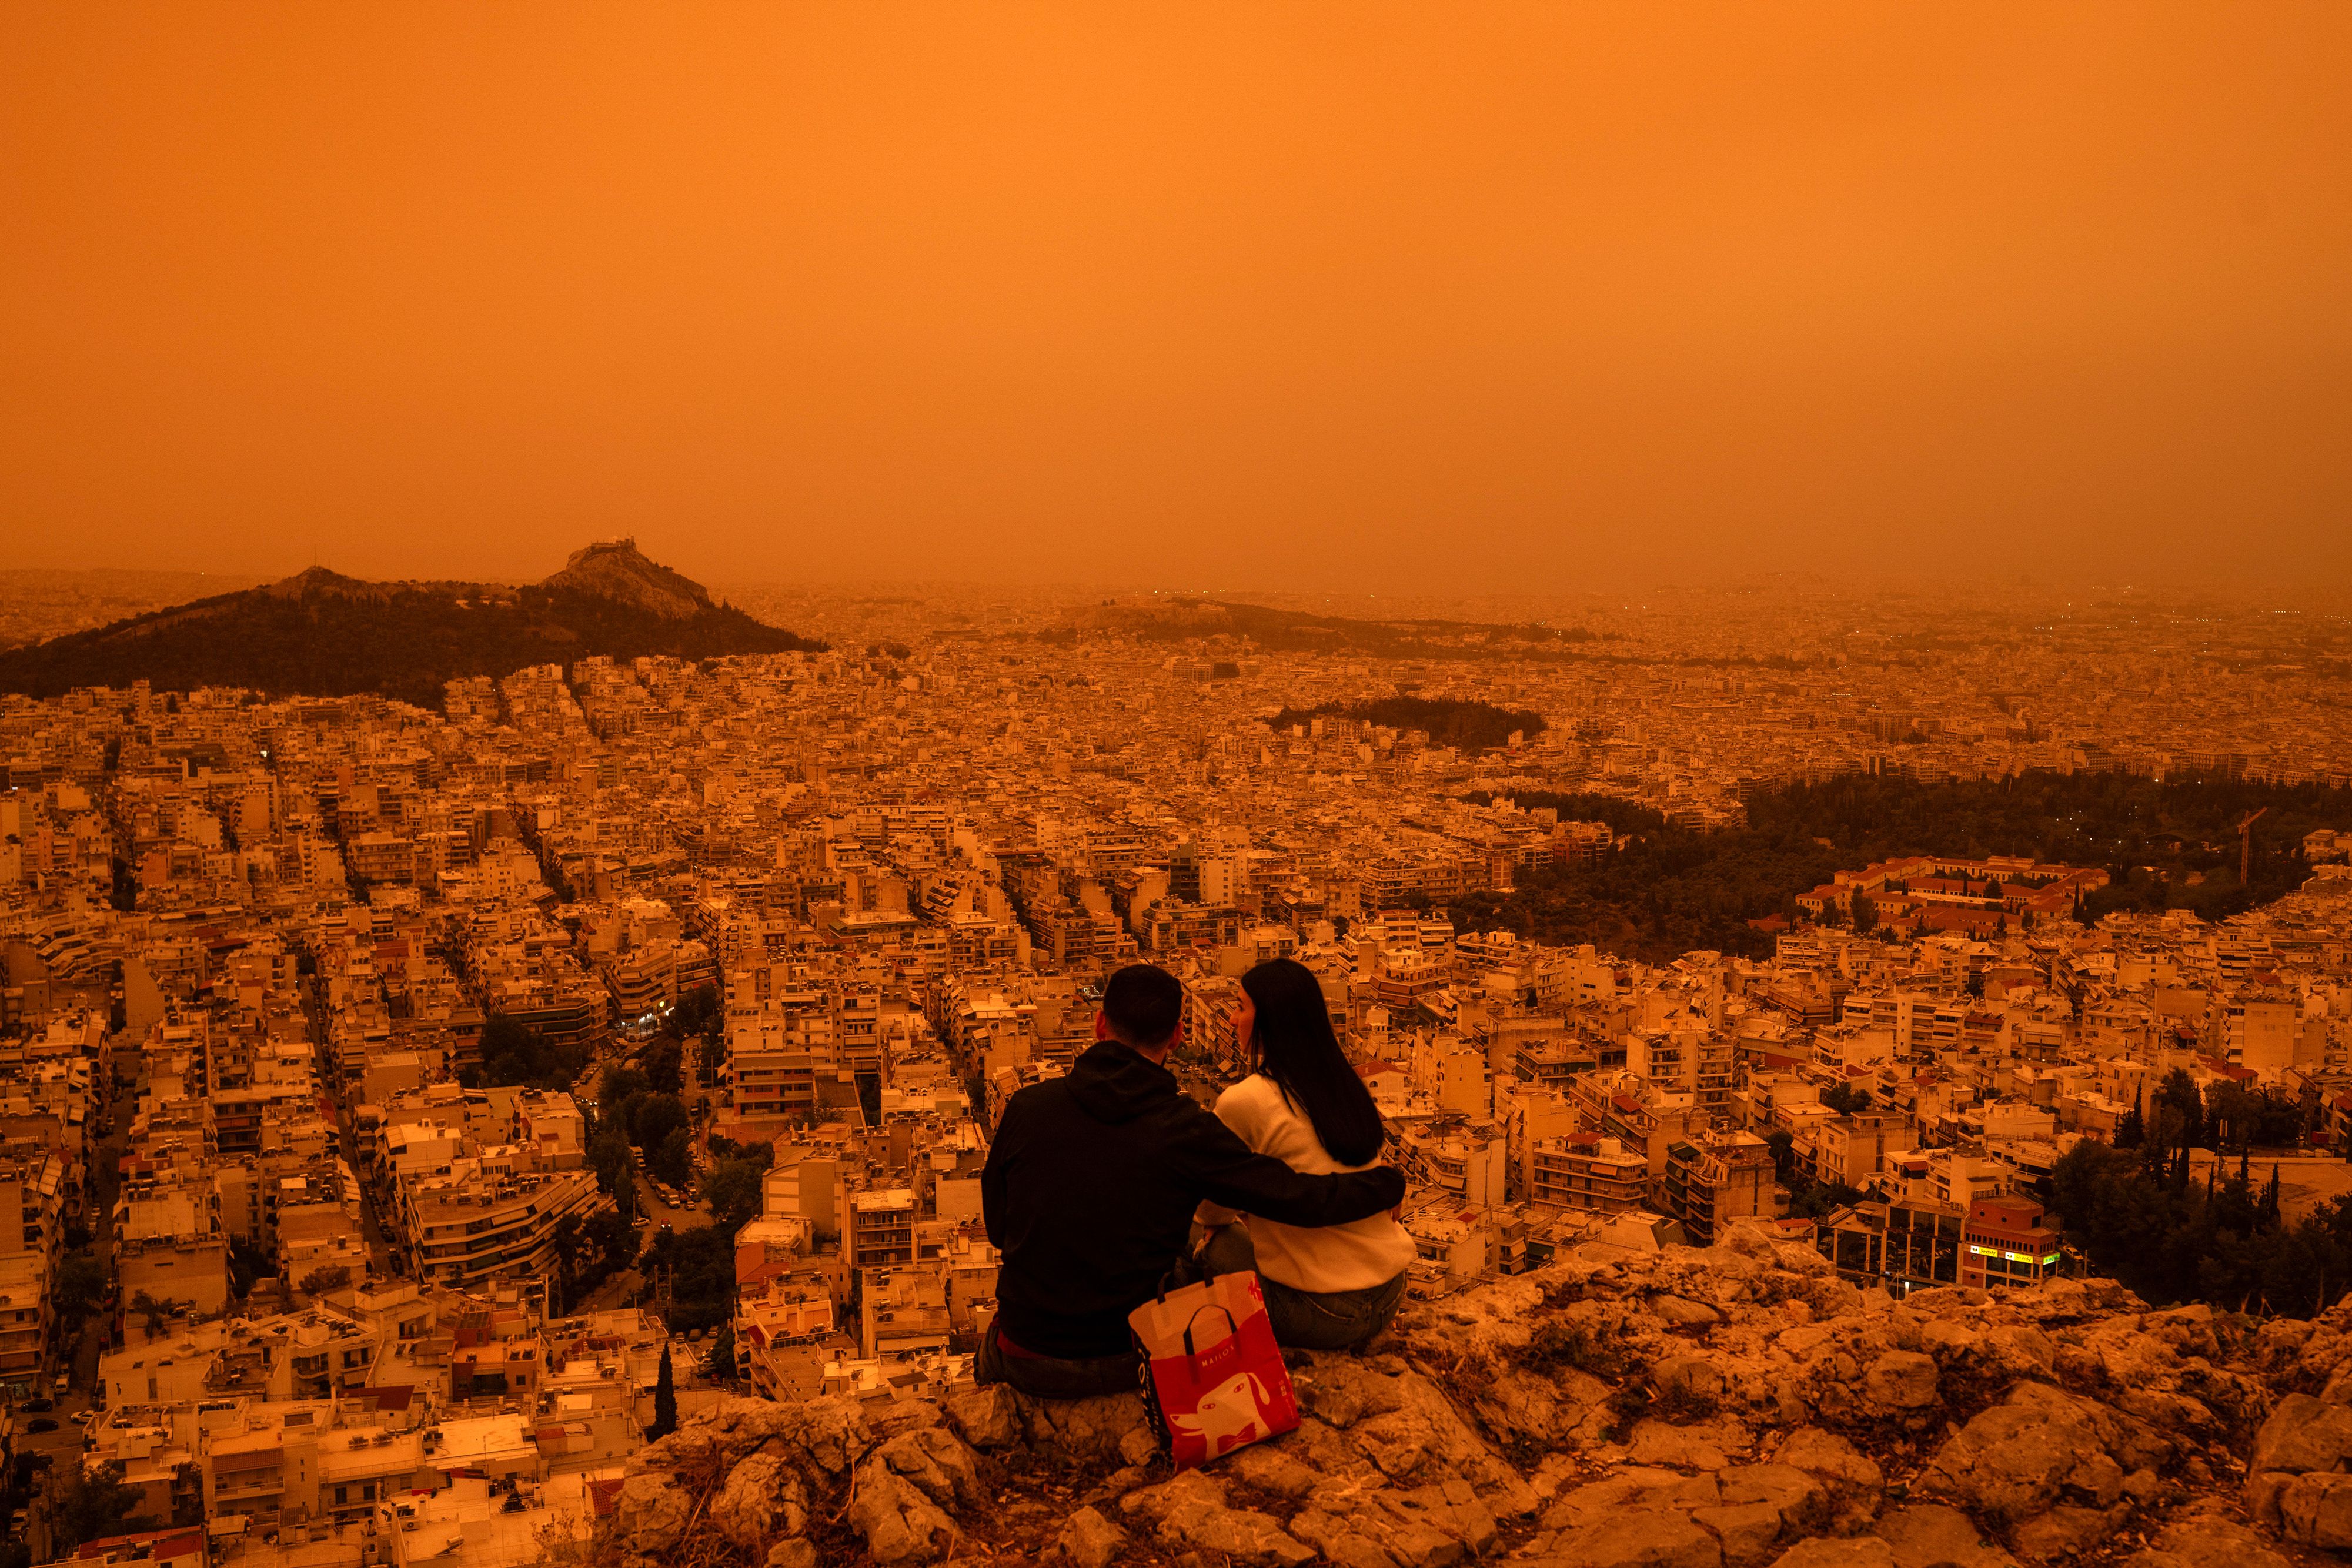 Les folles images d'Athènes sous la poussière du Sahara